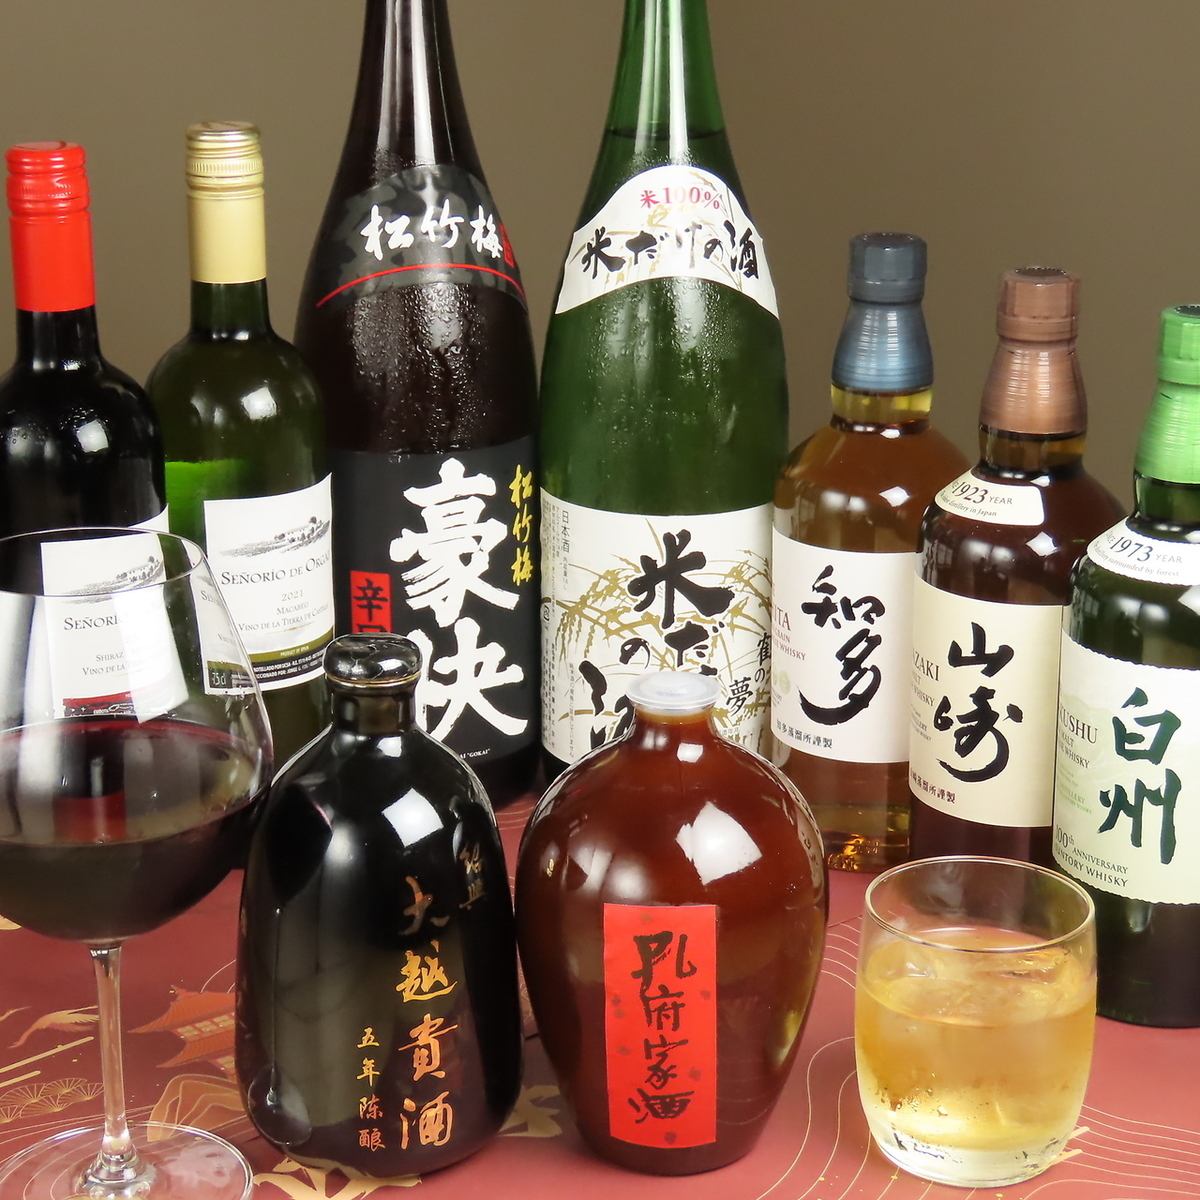 단품 음료 무제한 세금 포함 2,750 엔! 요리에 맞는 술을 종류 풍부하게 즐길 수 있습니다